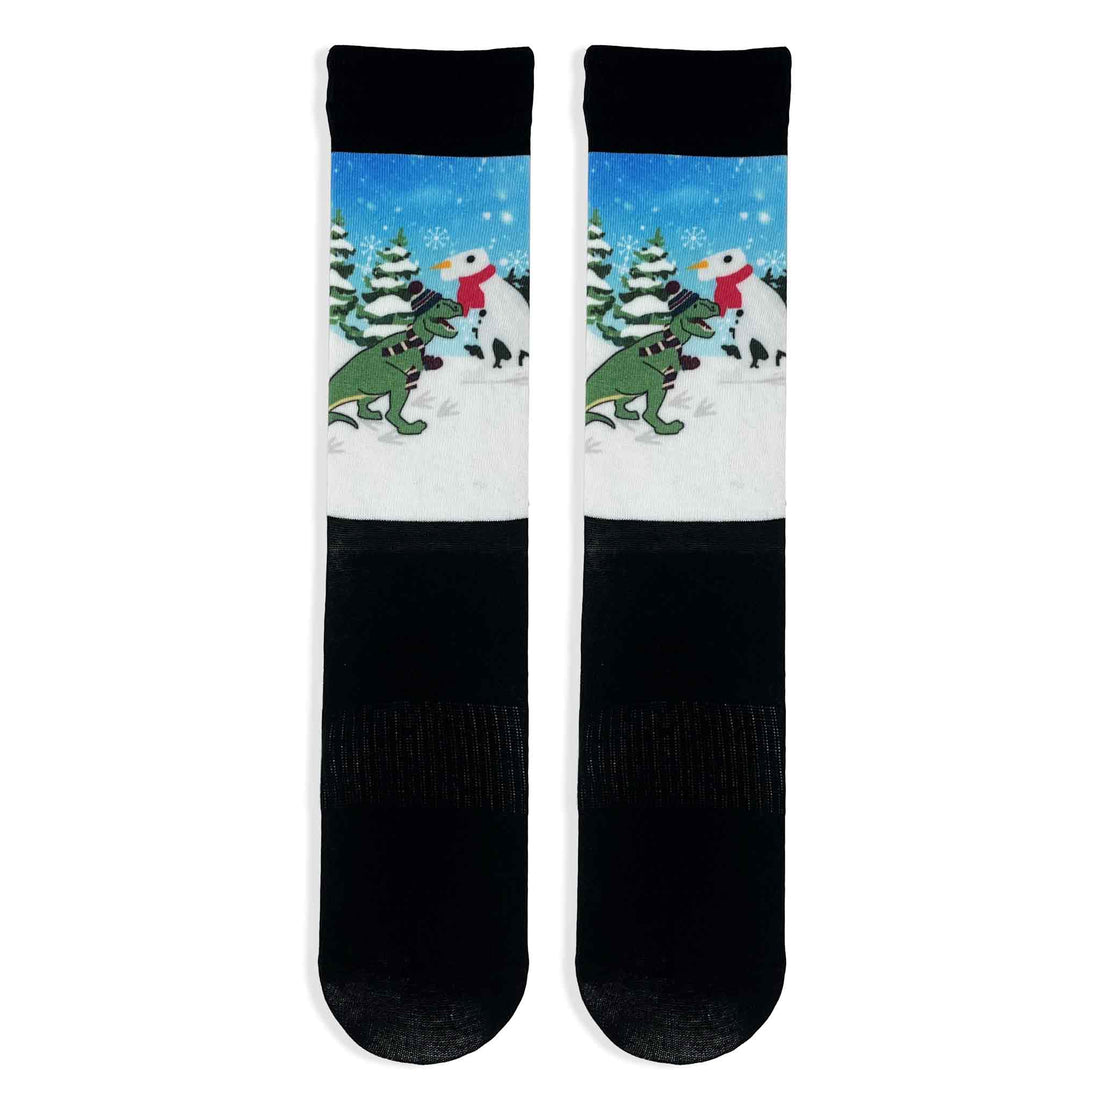 Dinosaur Snowman Adult Printed Socks